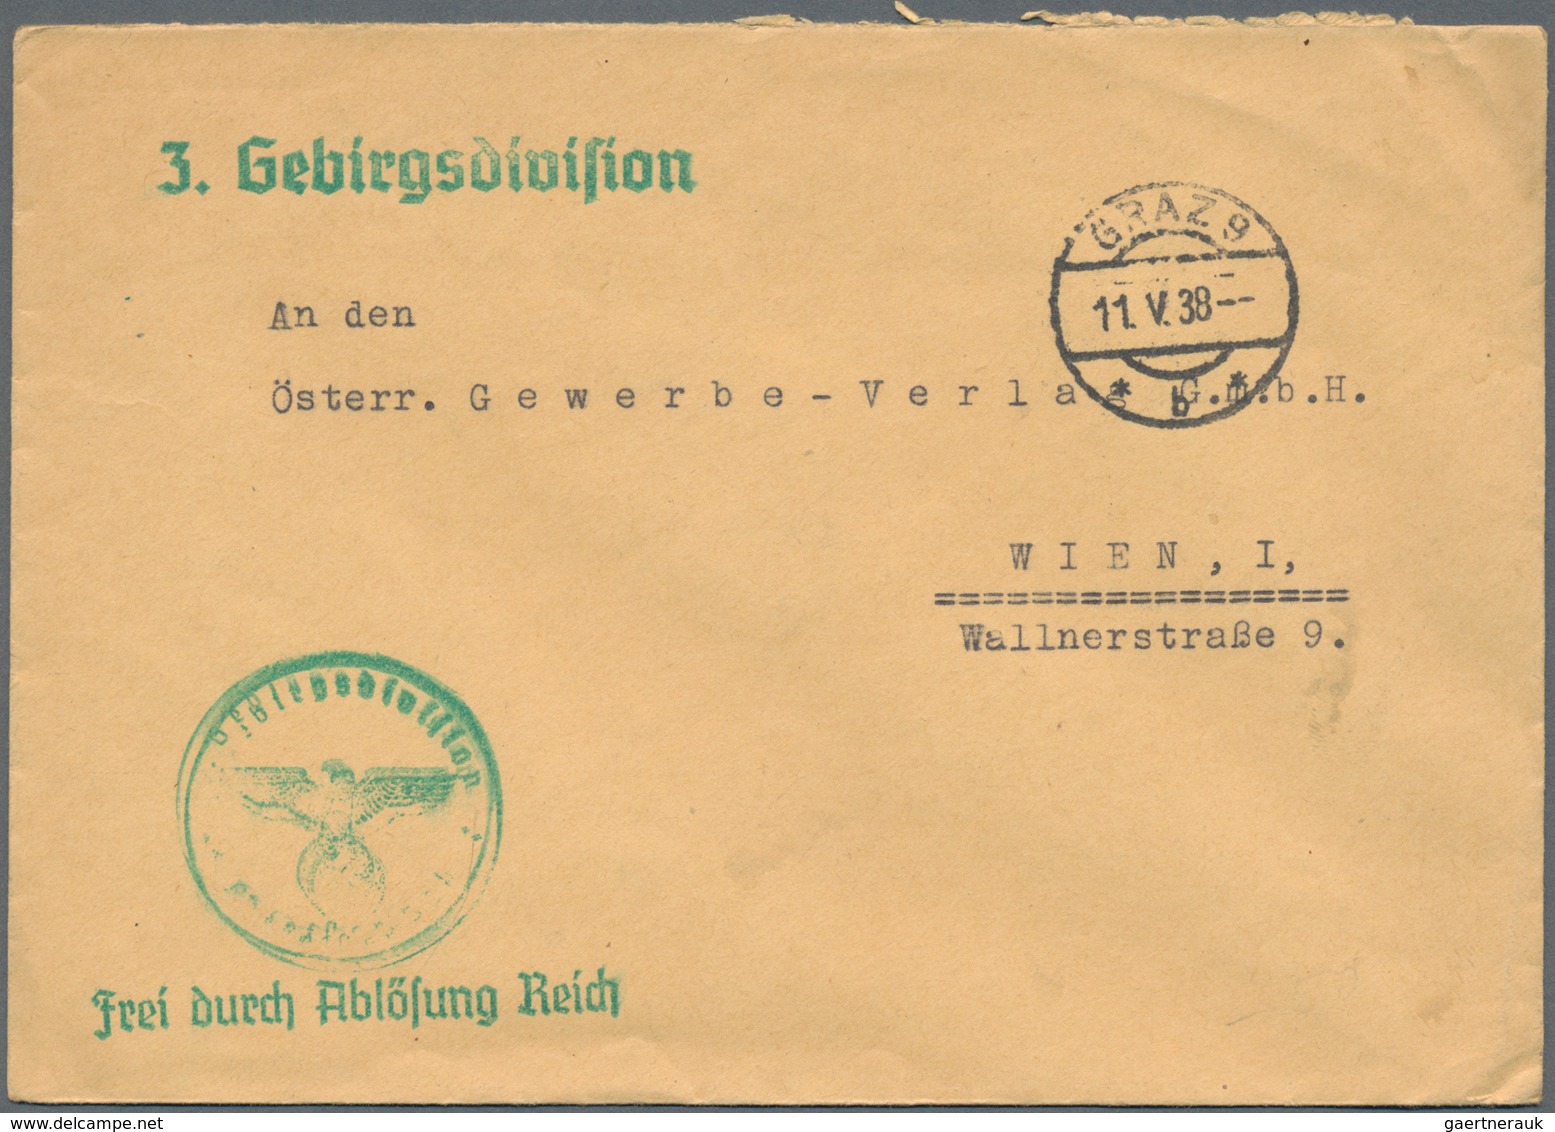 Deutsches Reich - 3. Reich: 1939/44, WKII ca. 550 Briefe (viele mit Inhalt) und Karten zum Teil auch